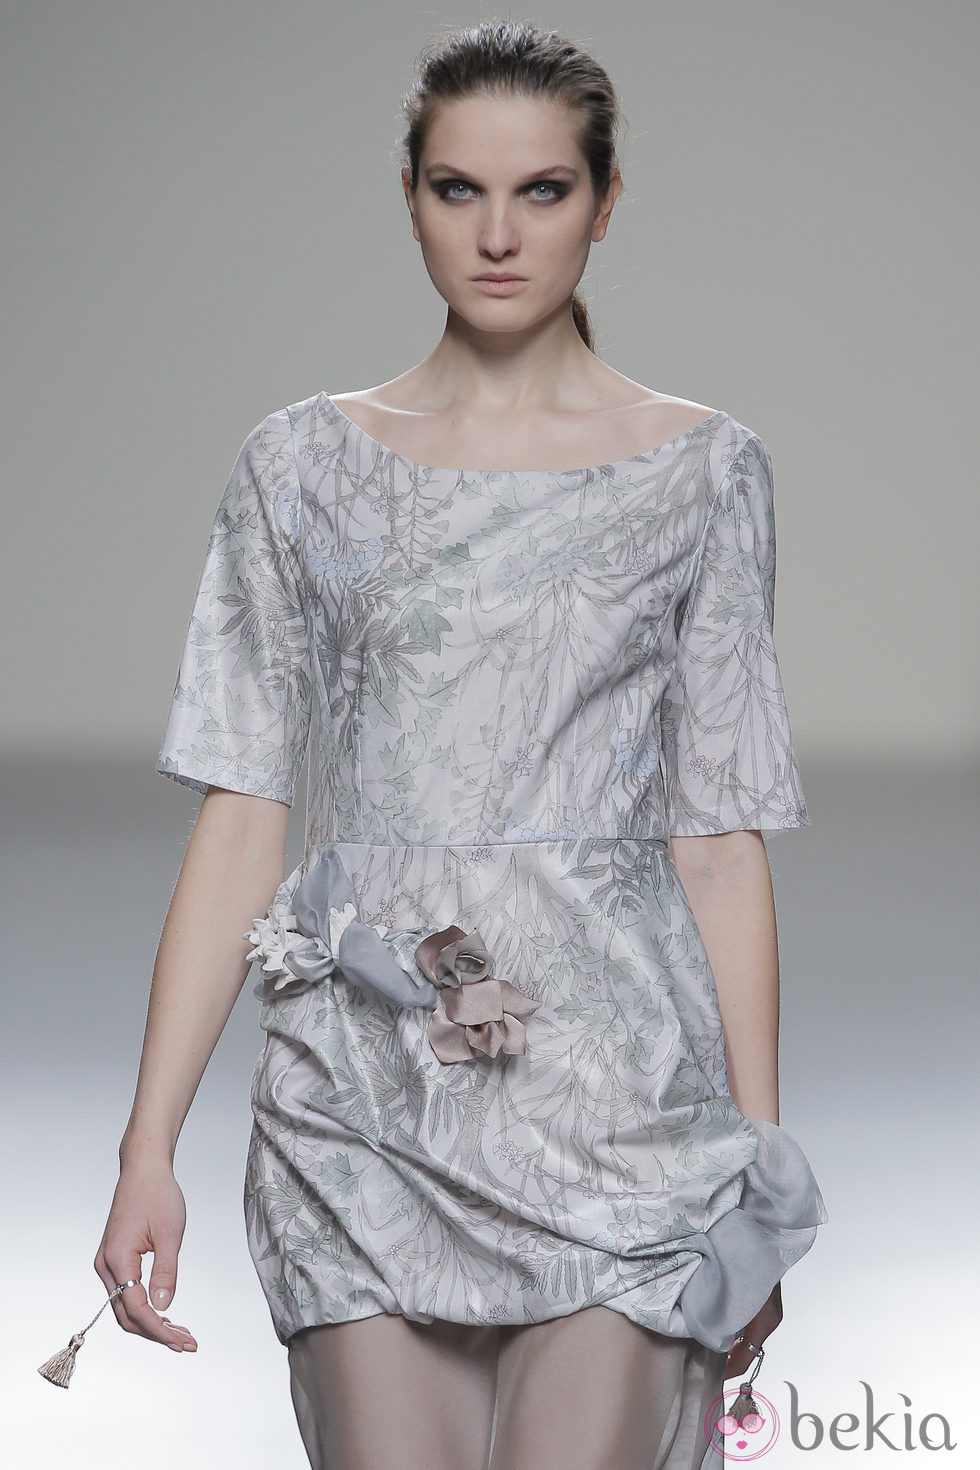 Vestido estampado de la colección otoño/invierno 2013/2014 de Våldnad en Madrid Fashion Week